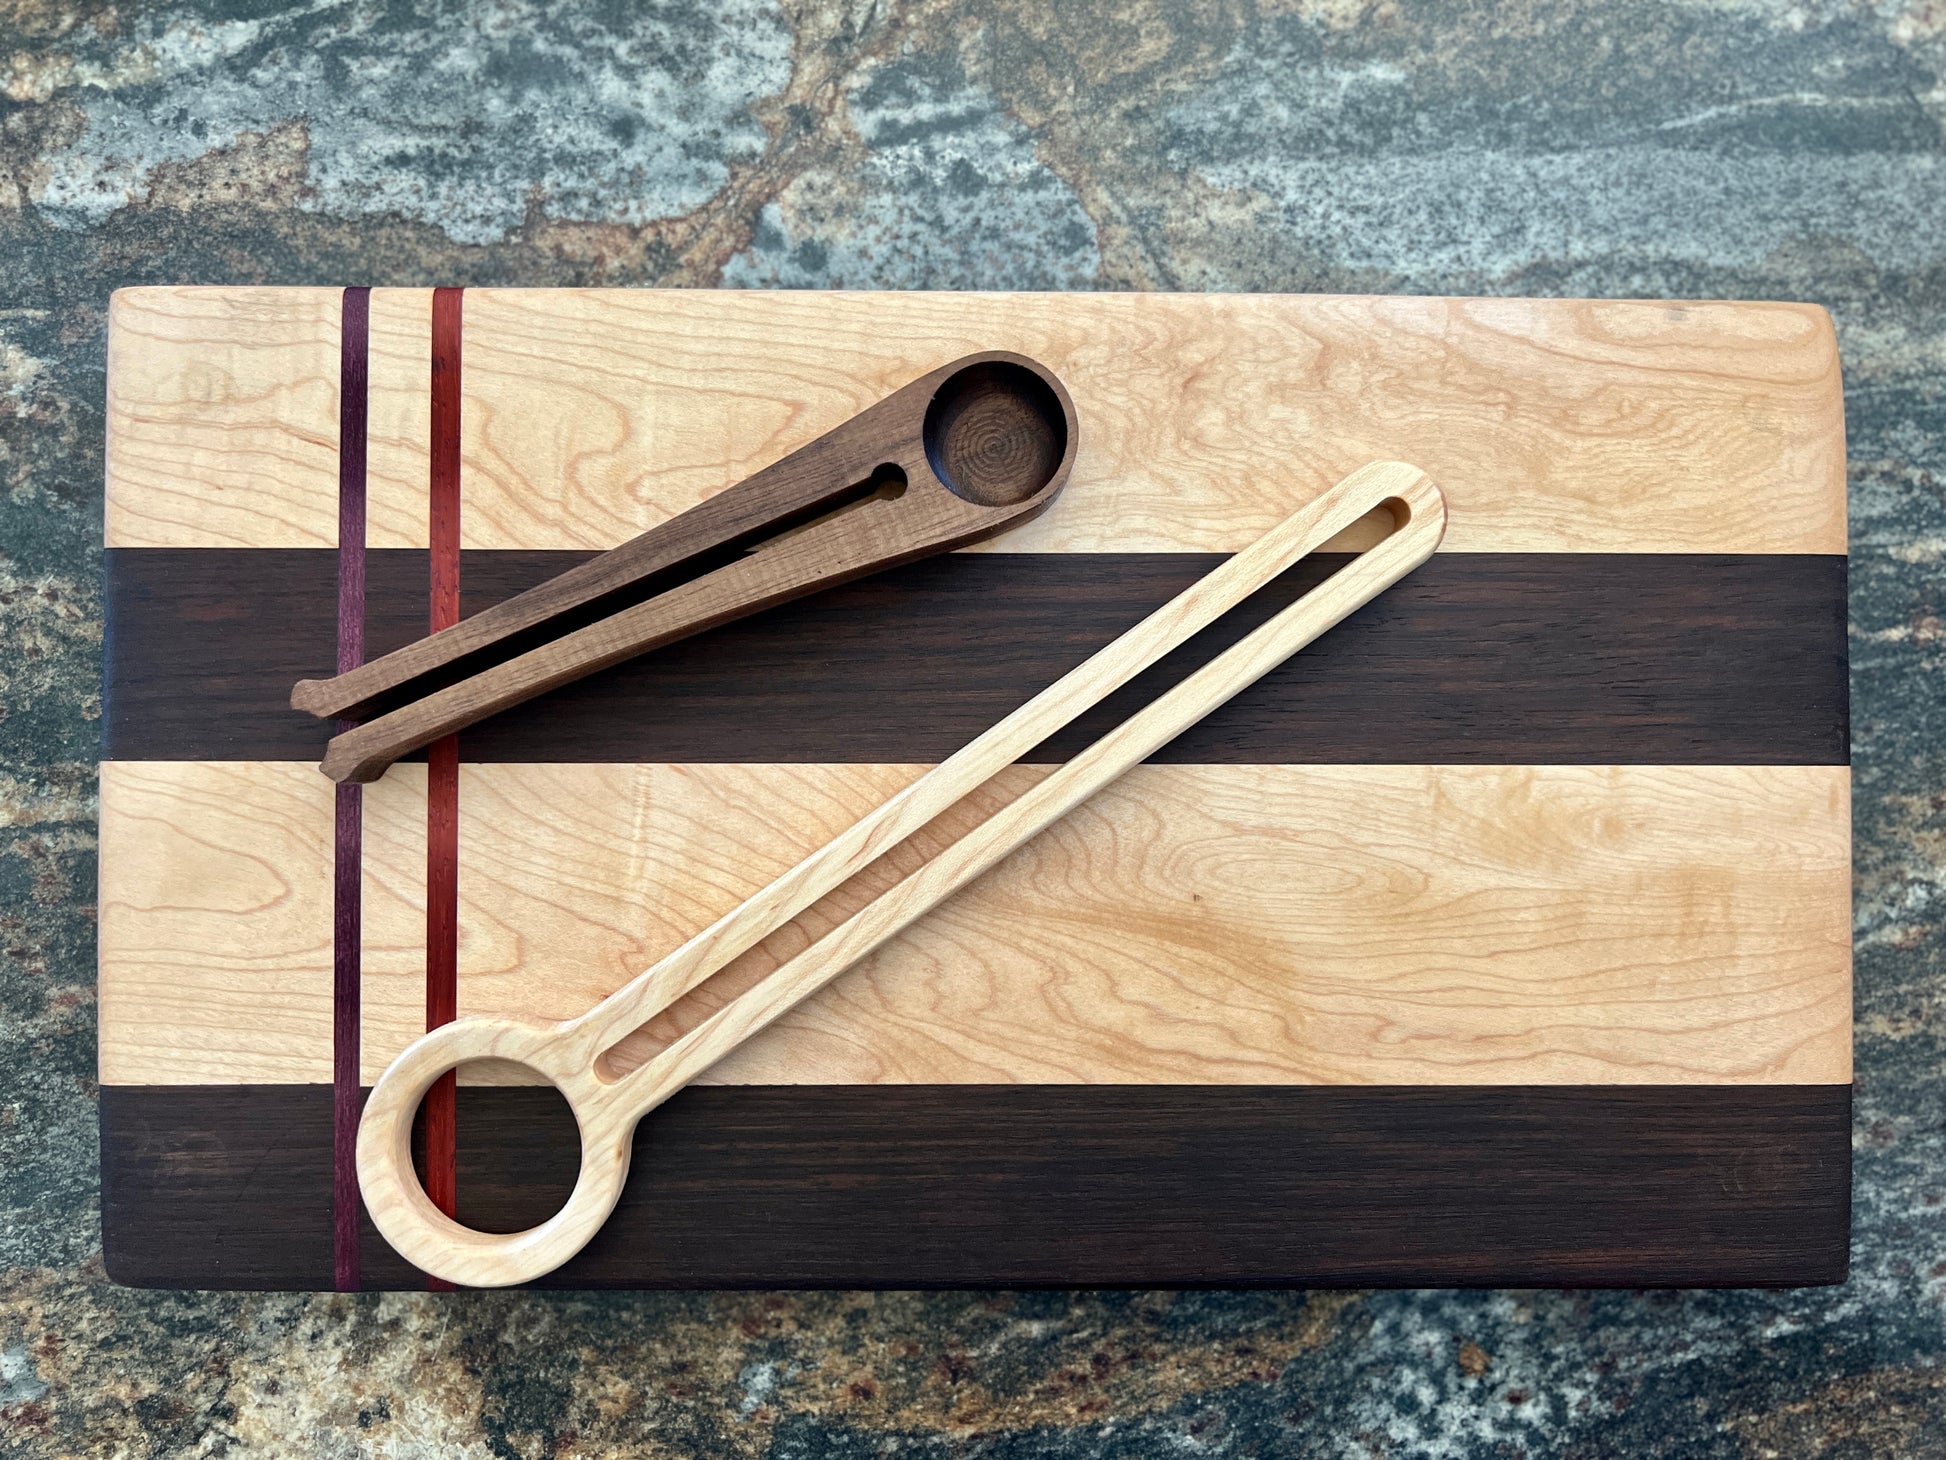 Medium Olive Wood Serving Board - Whisk